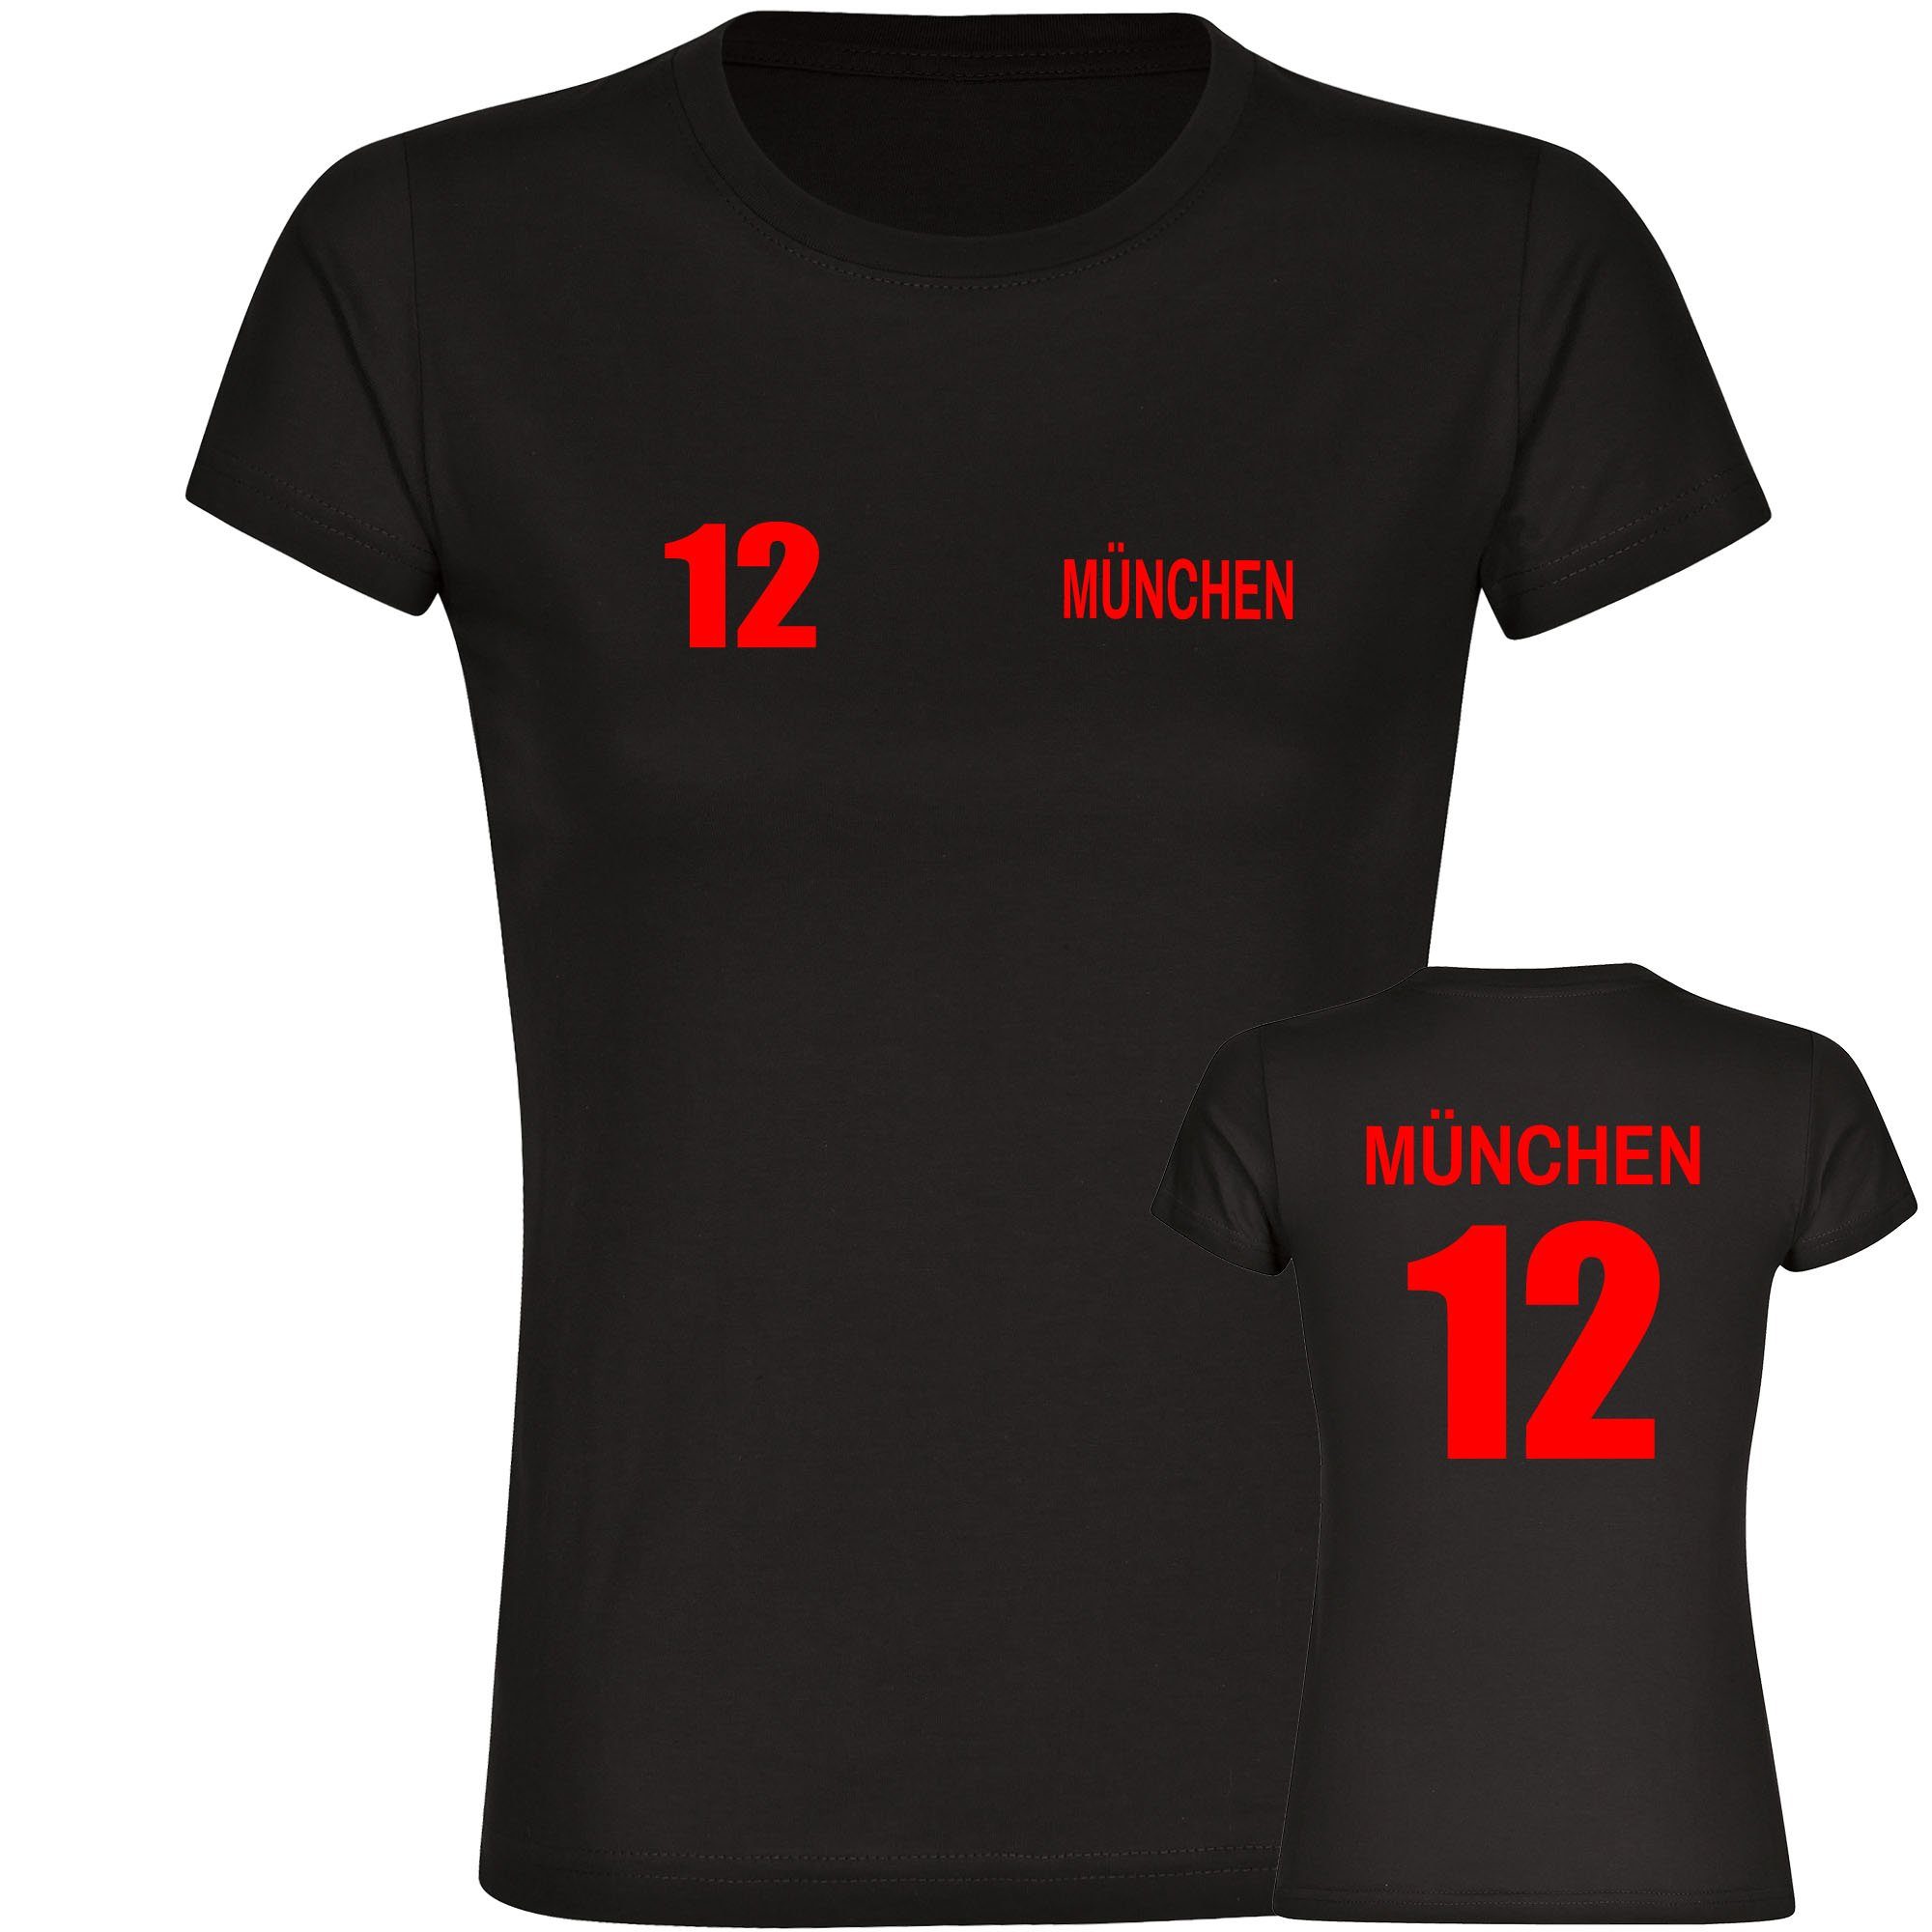 multifanshop T-Shirt Damen München rot - Trikot 12 - Frauen